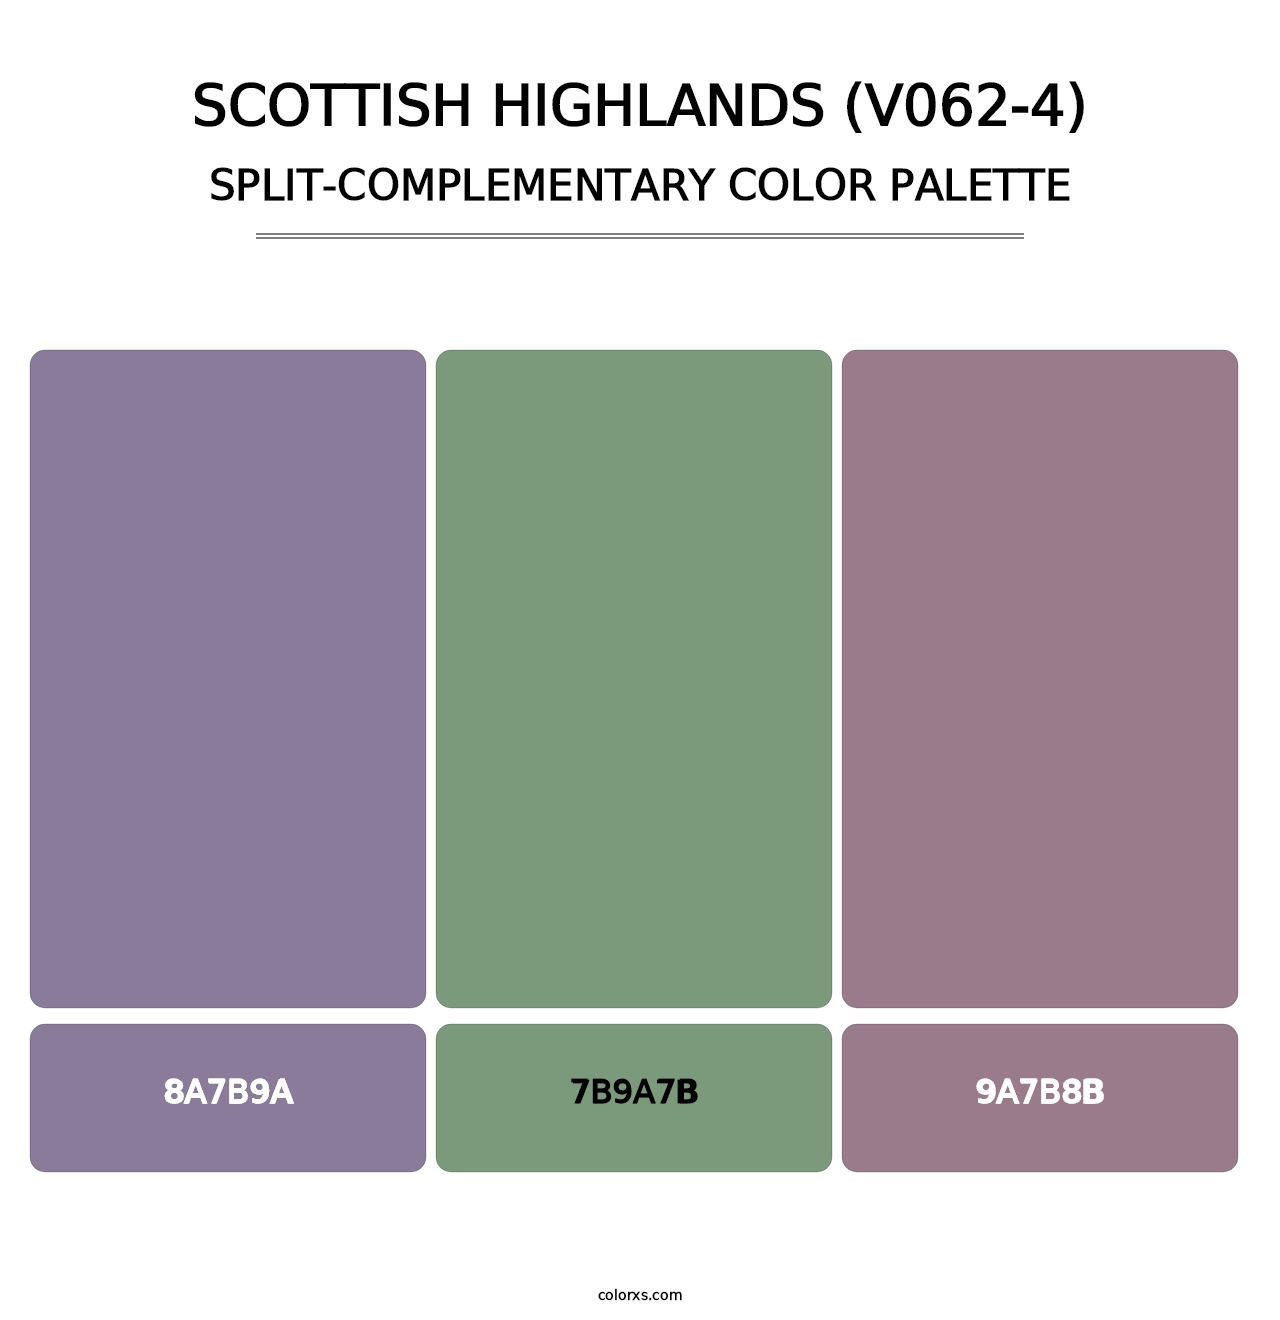 Scottish Highlands (V062-4) - Split-Complementary Color Palette